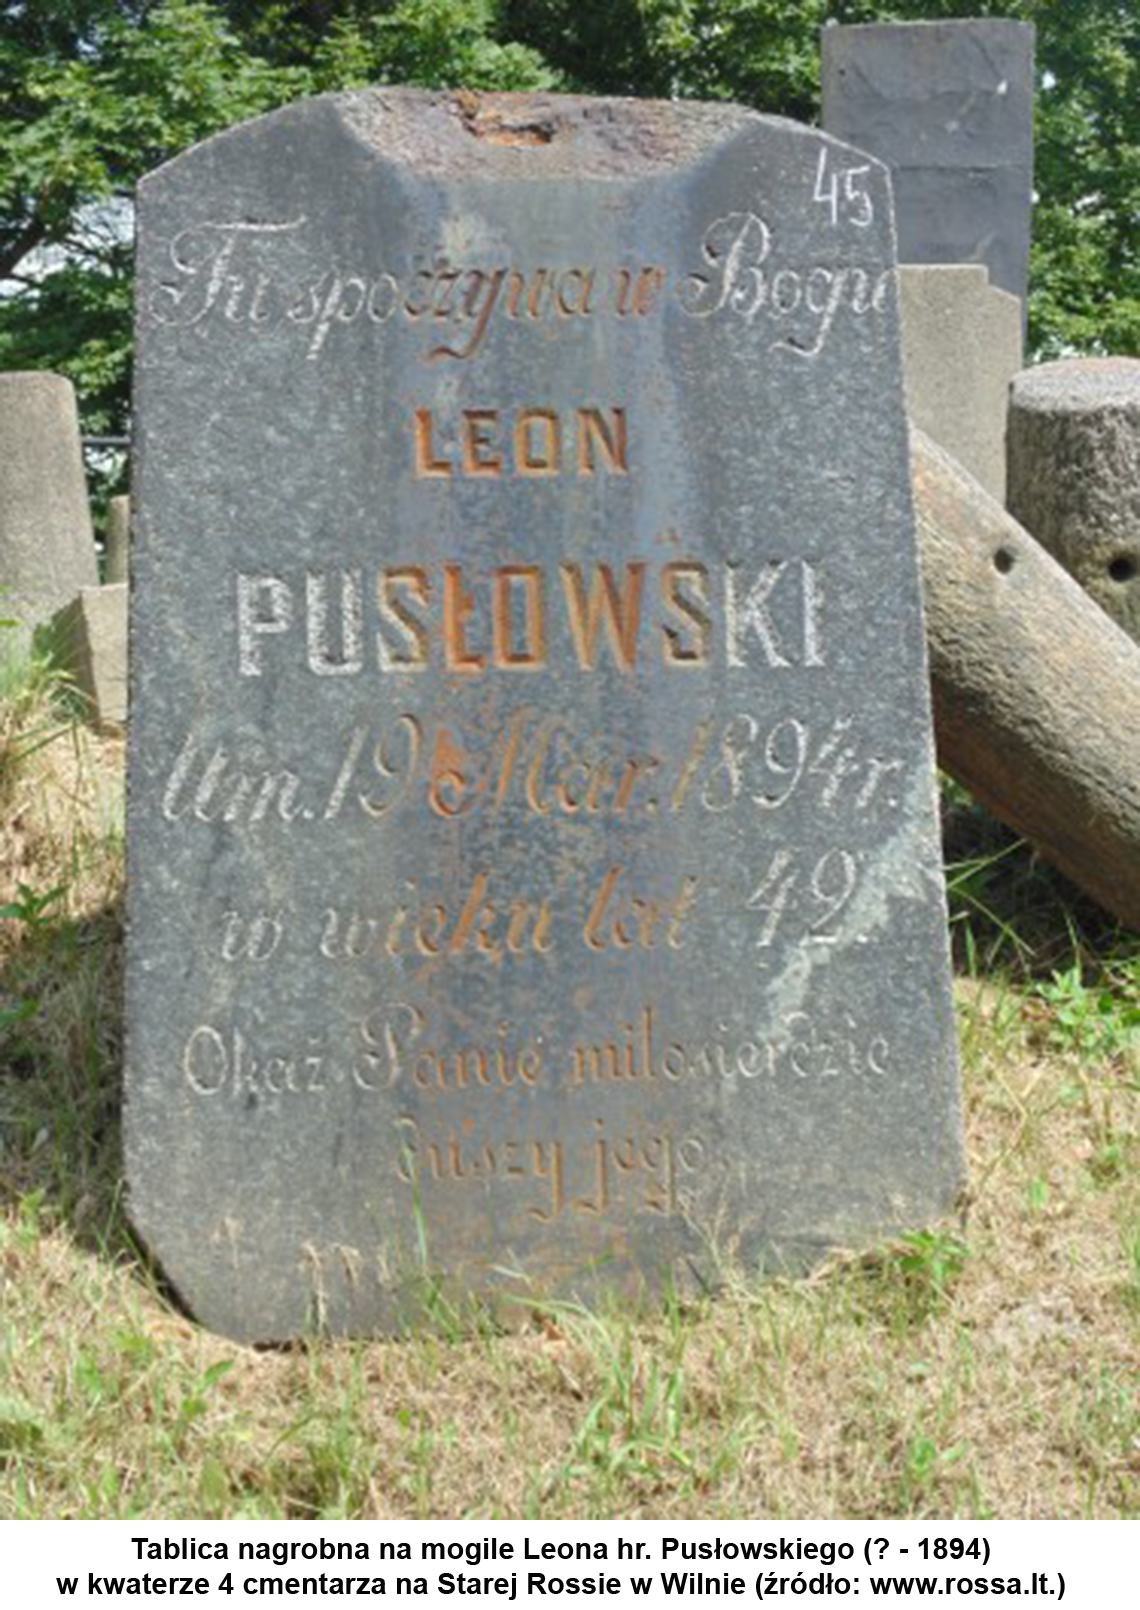 Tablica nagrobna na mogile Leona hr. Pusłowskiego (? - 1894) w kwaterze 4 cmentarza na Starej Rossie w Wilnie (źródło www.rossa.lt.).